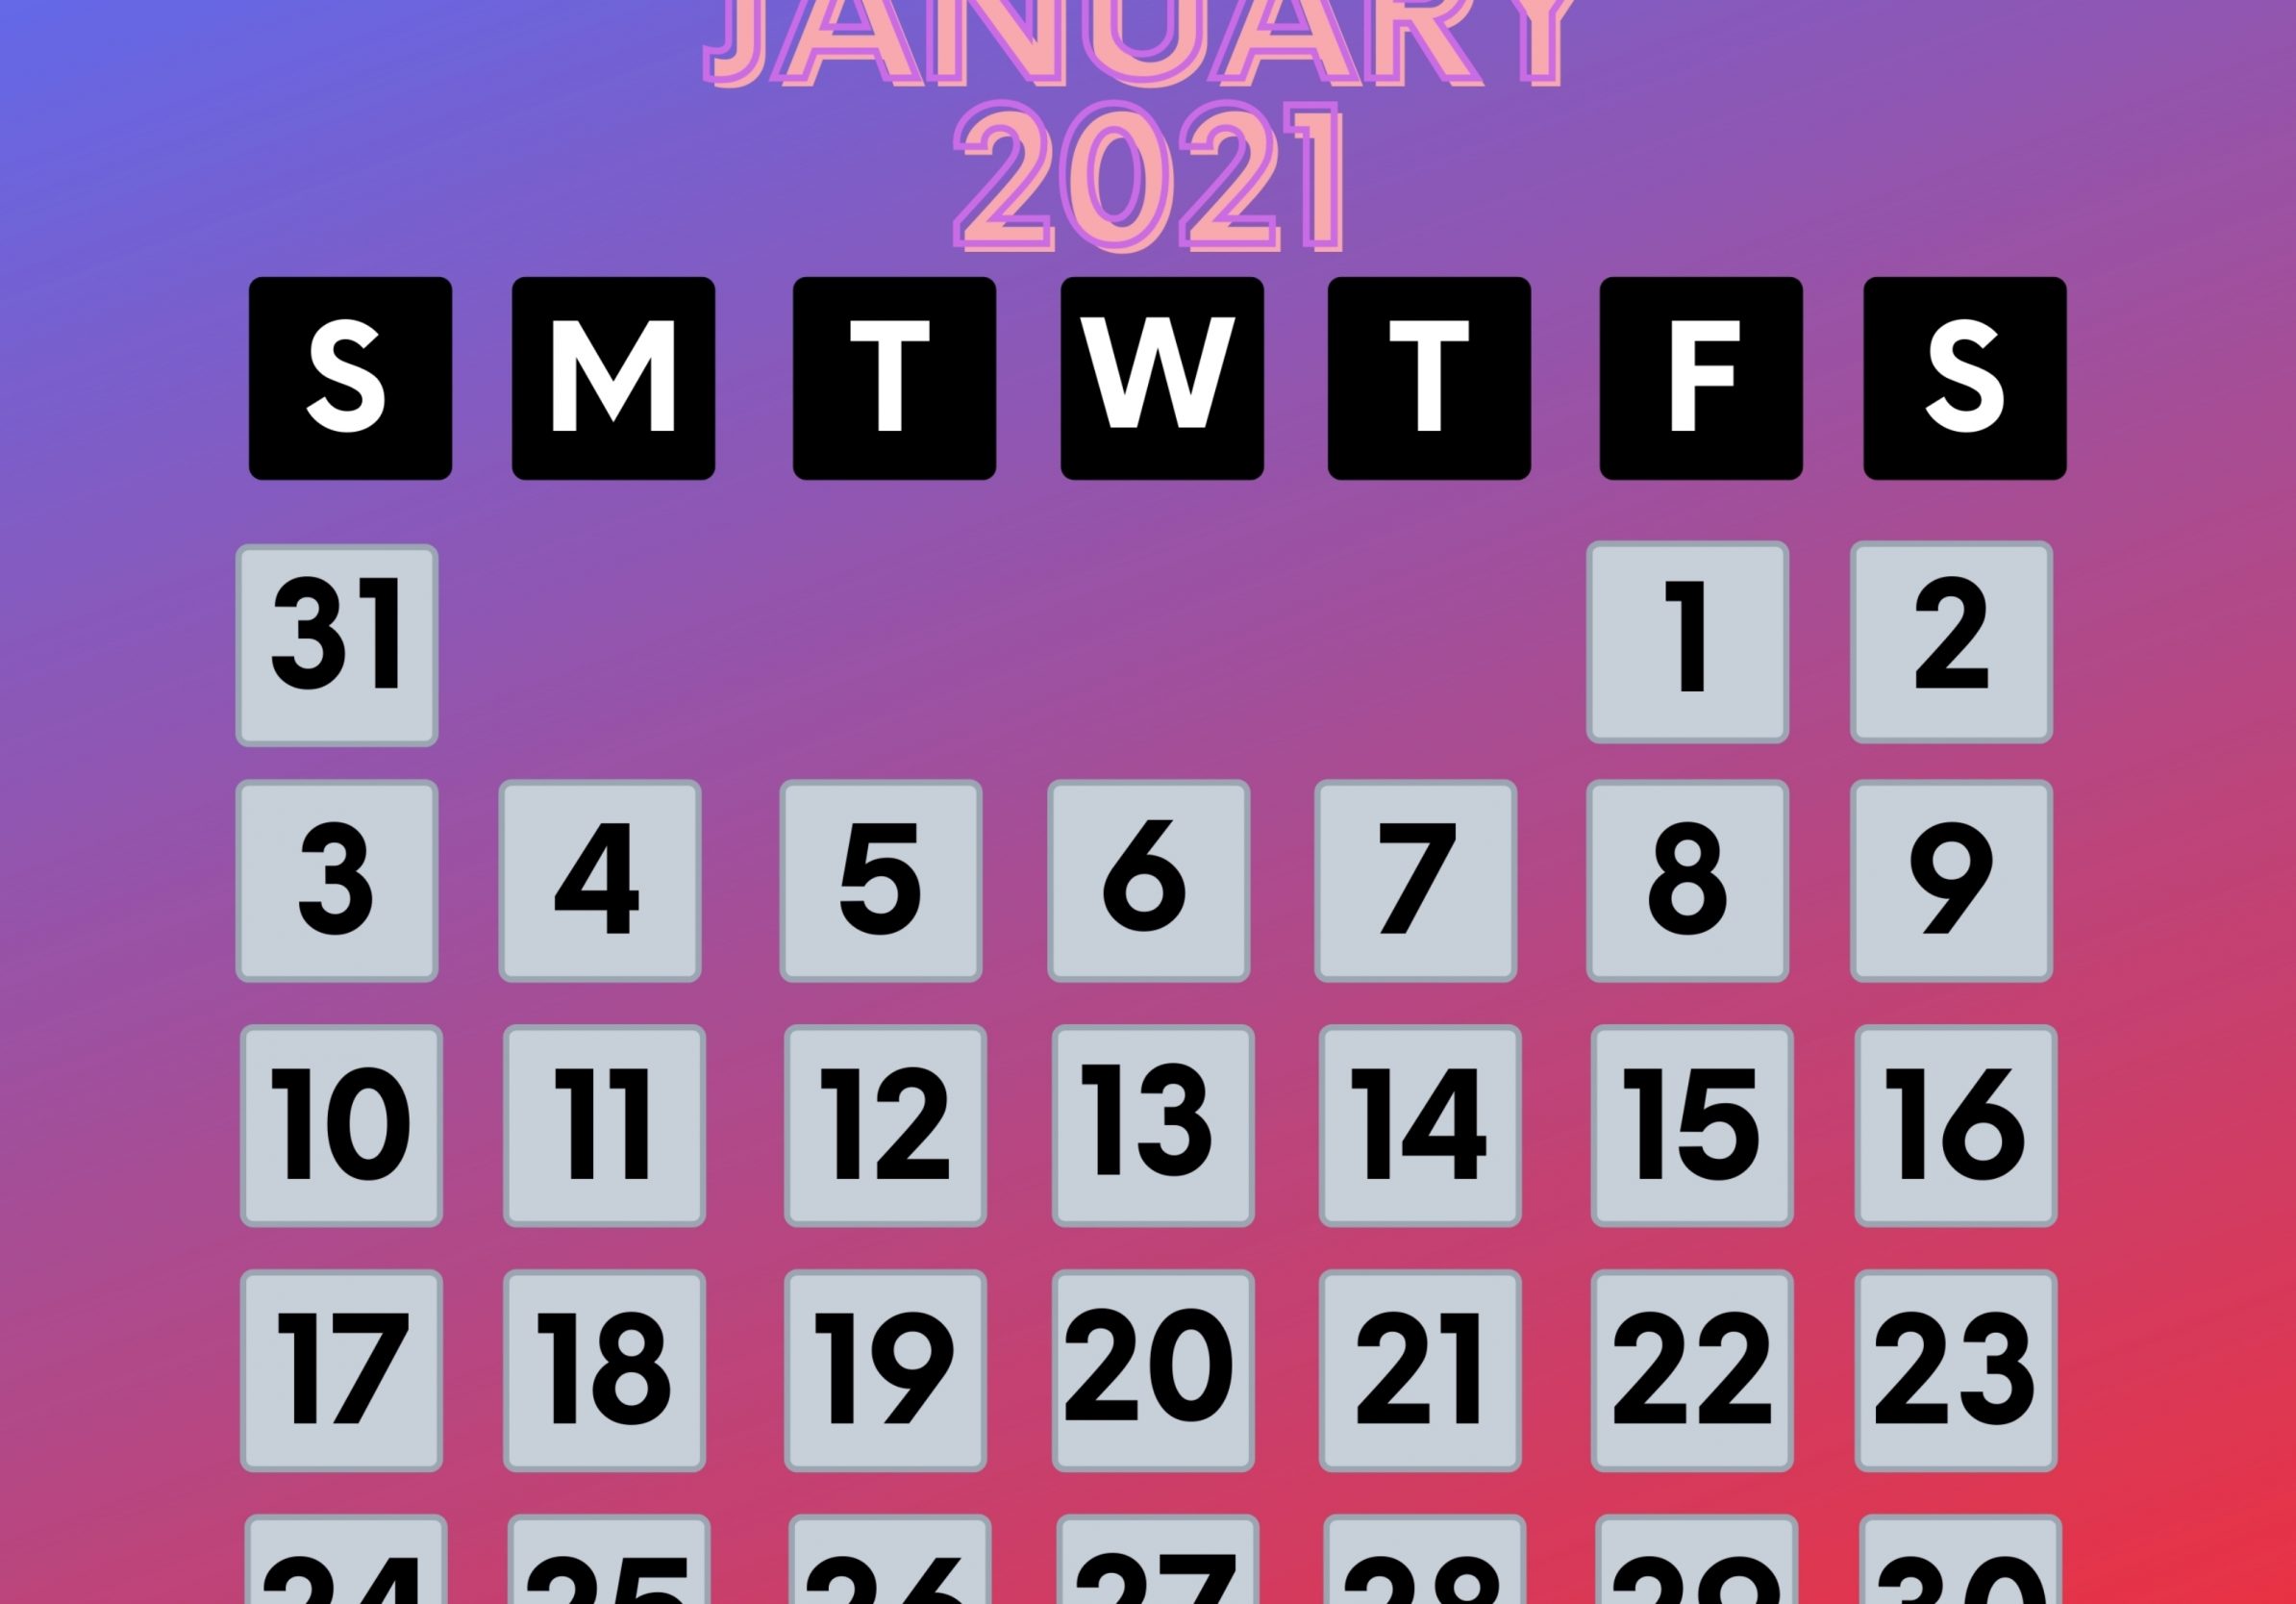 2388x1668 iPad Pro wallpapers January 2021 Calendar iPad Wallpaper 2388x1668 pixels resolution